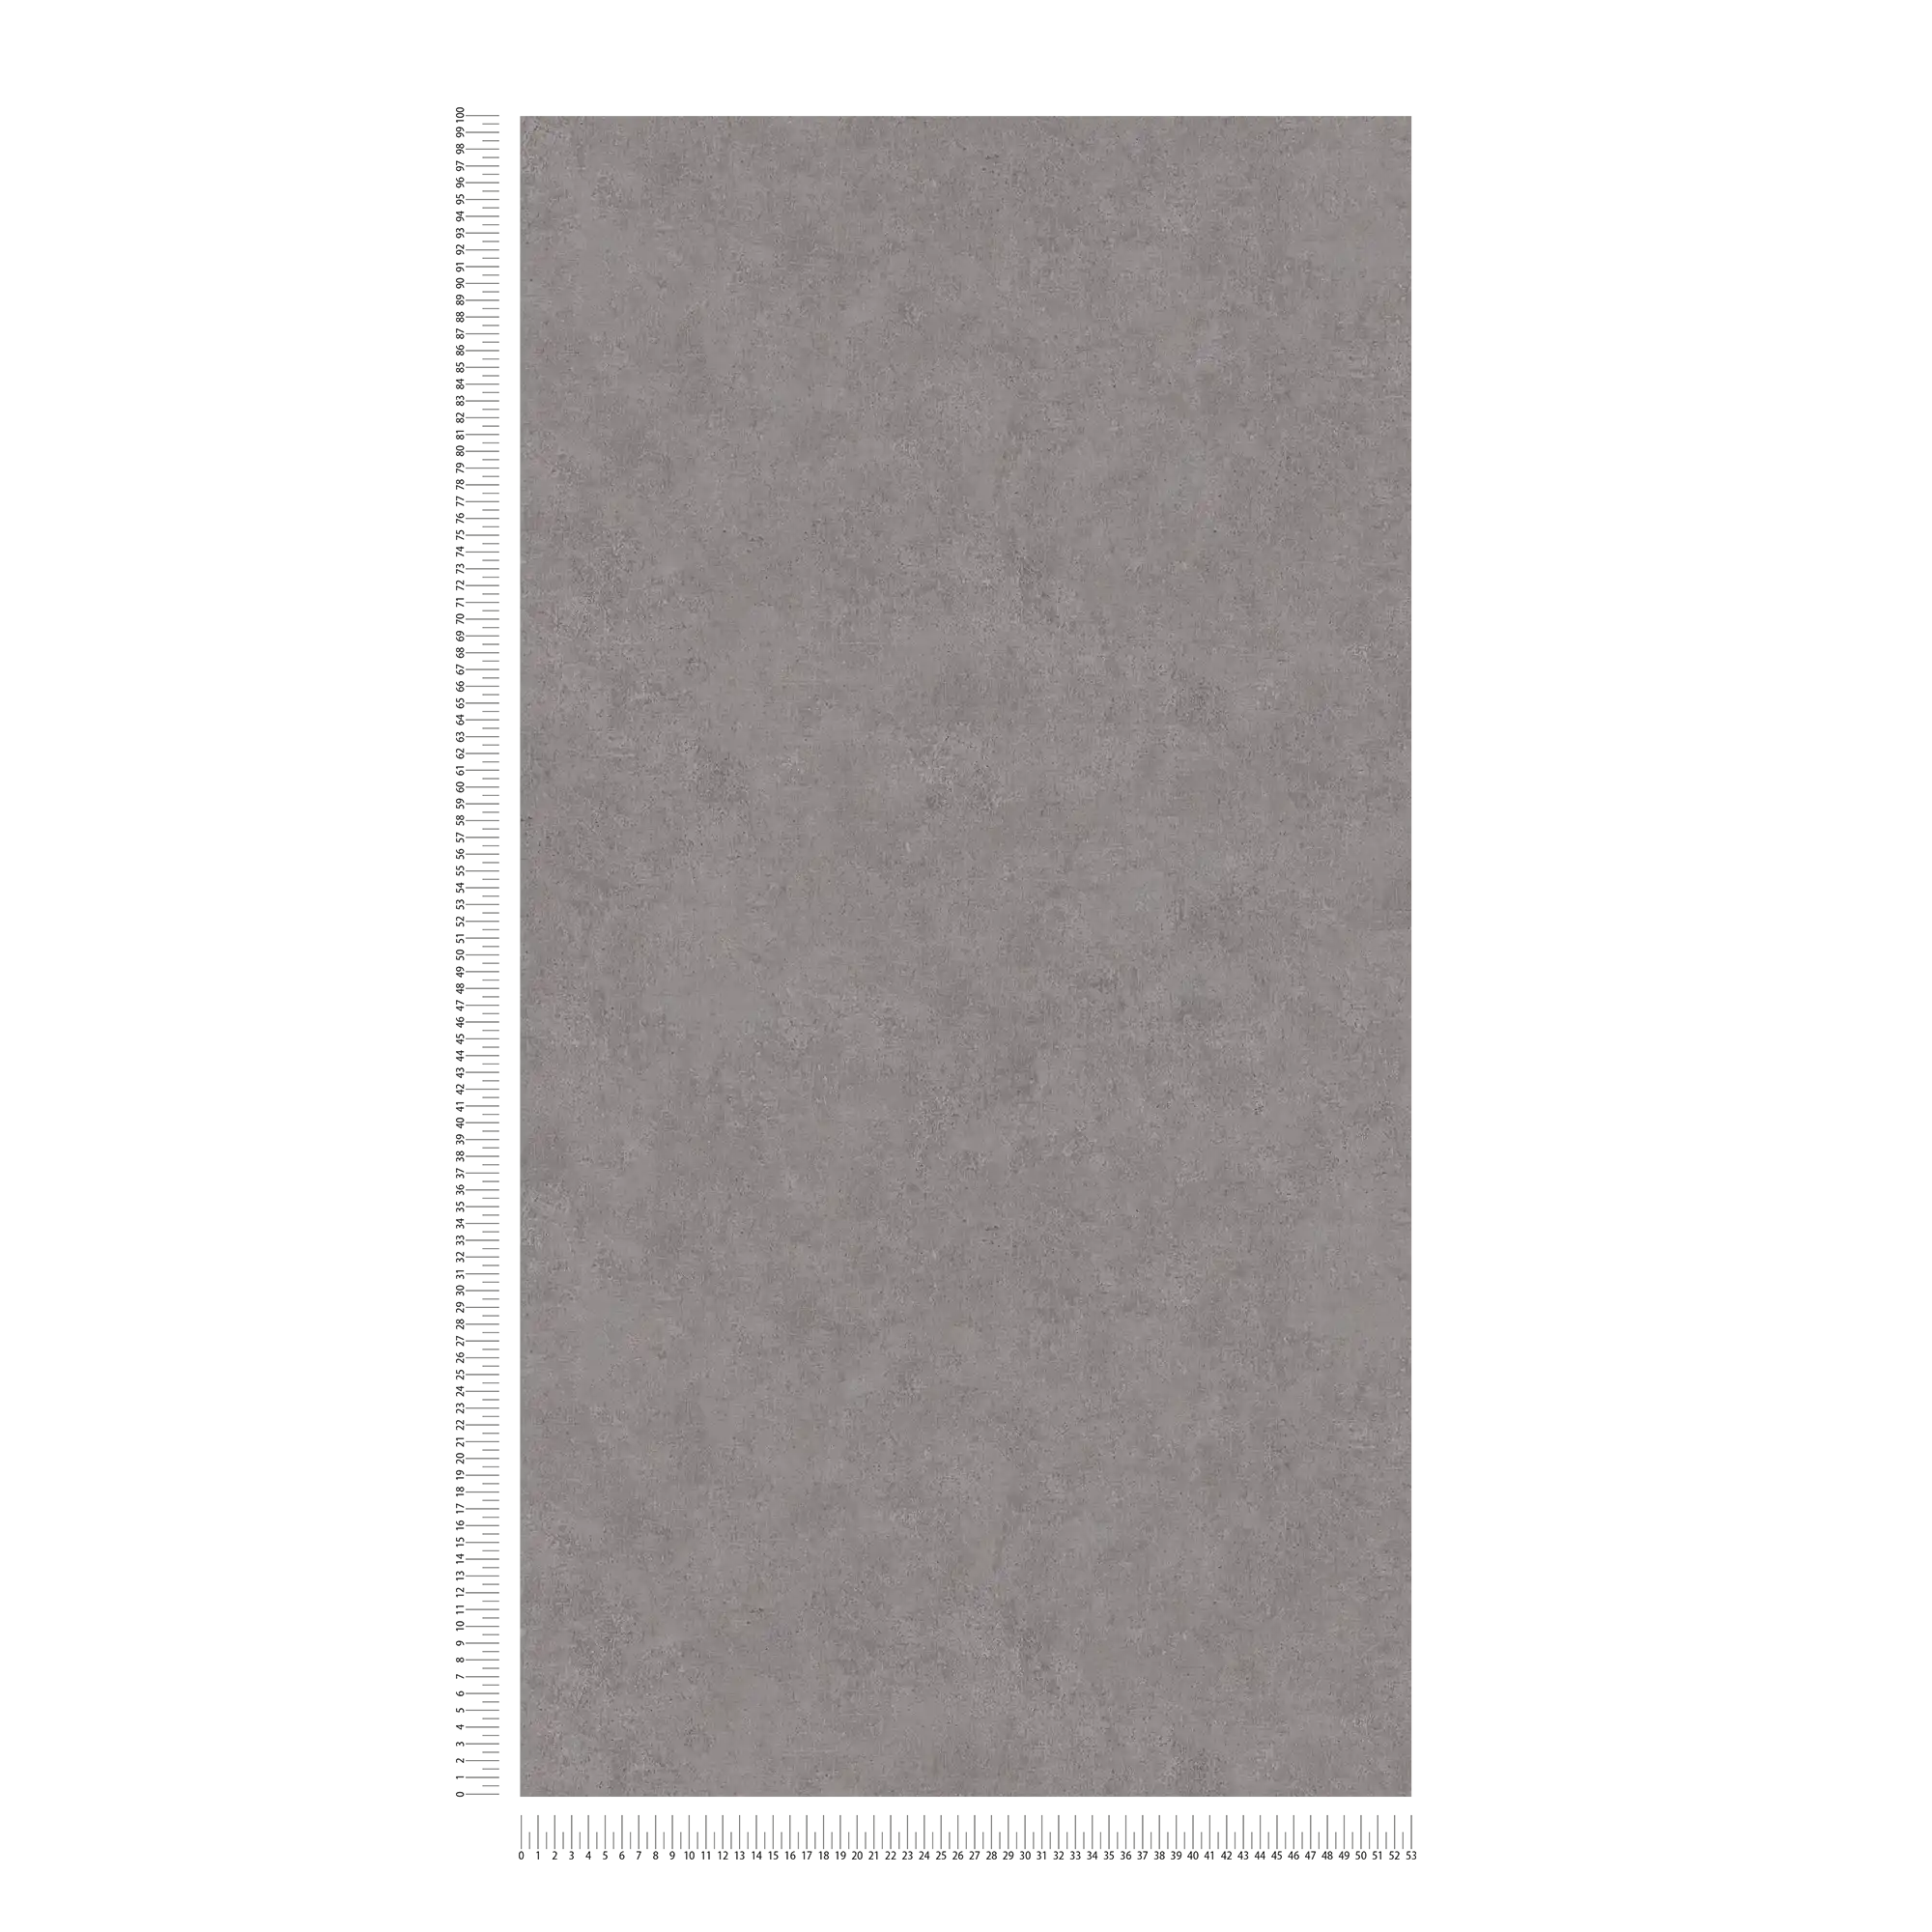             Papel pintado no tejido liso, patrón de color y aspecto vintage - gris
        